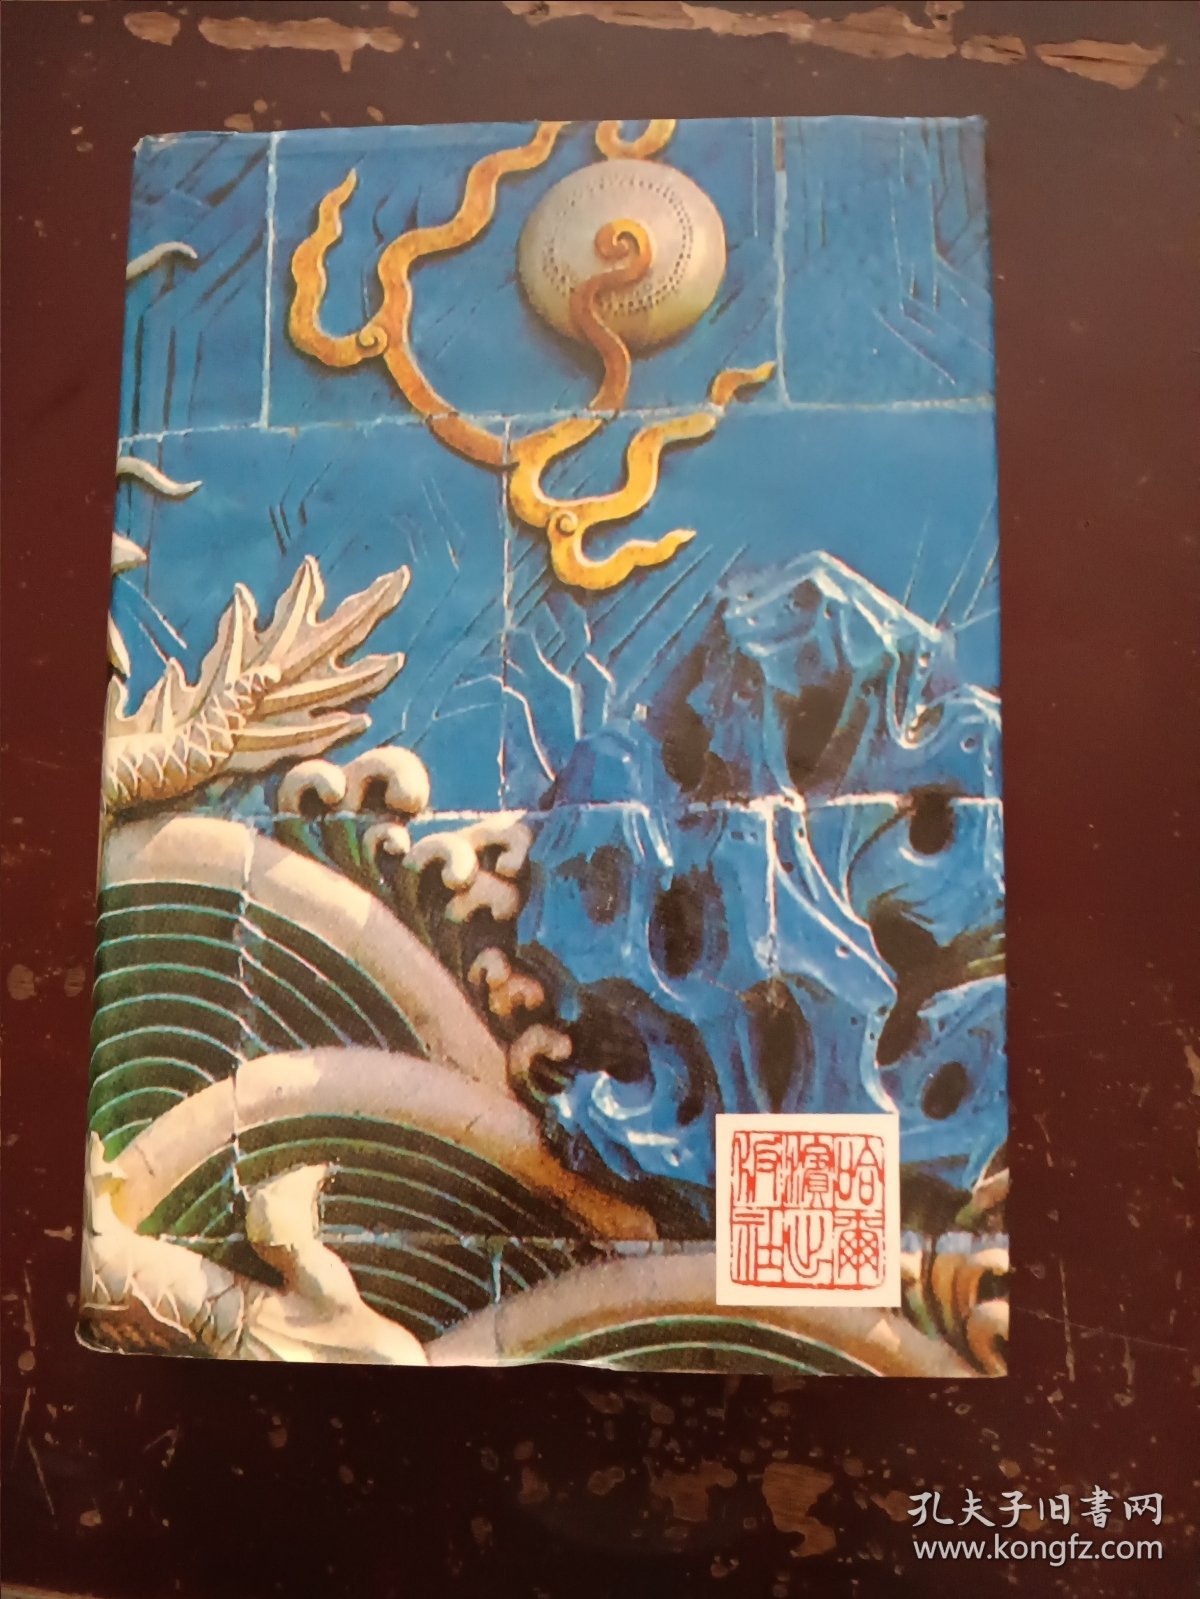 《当代中国书法艺术大成》精装版、一厚册。